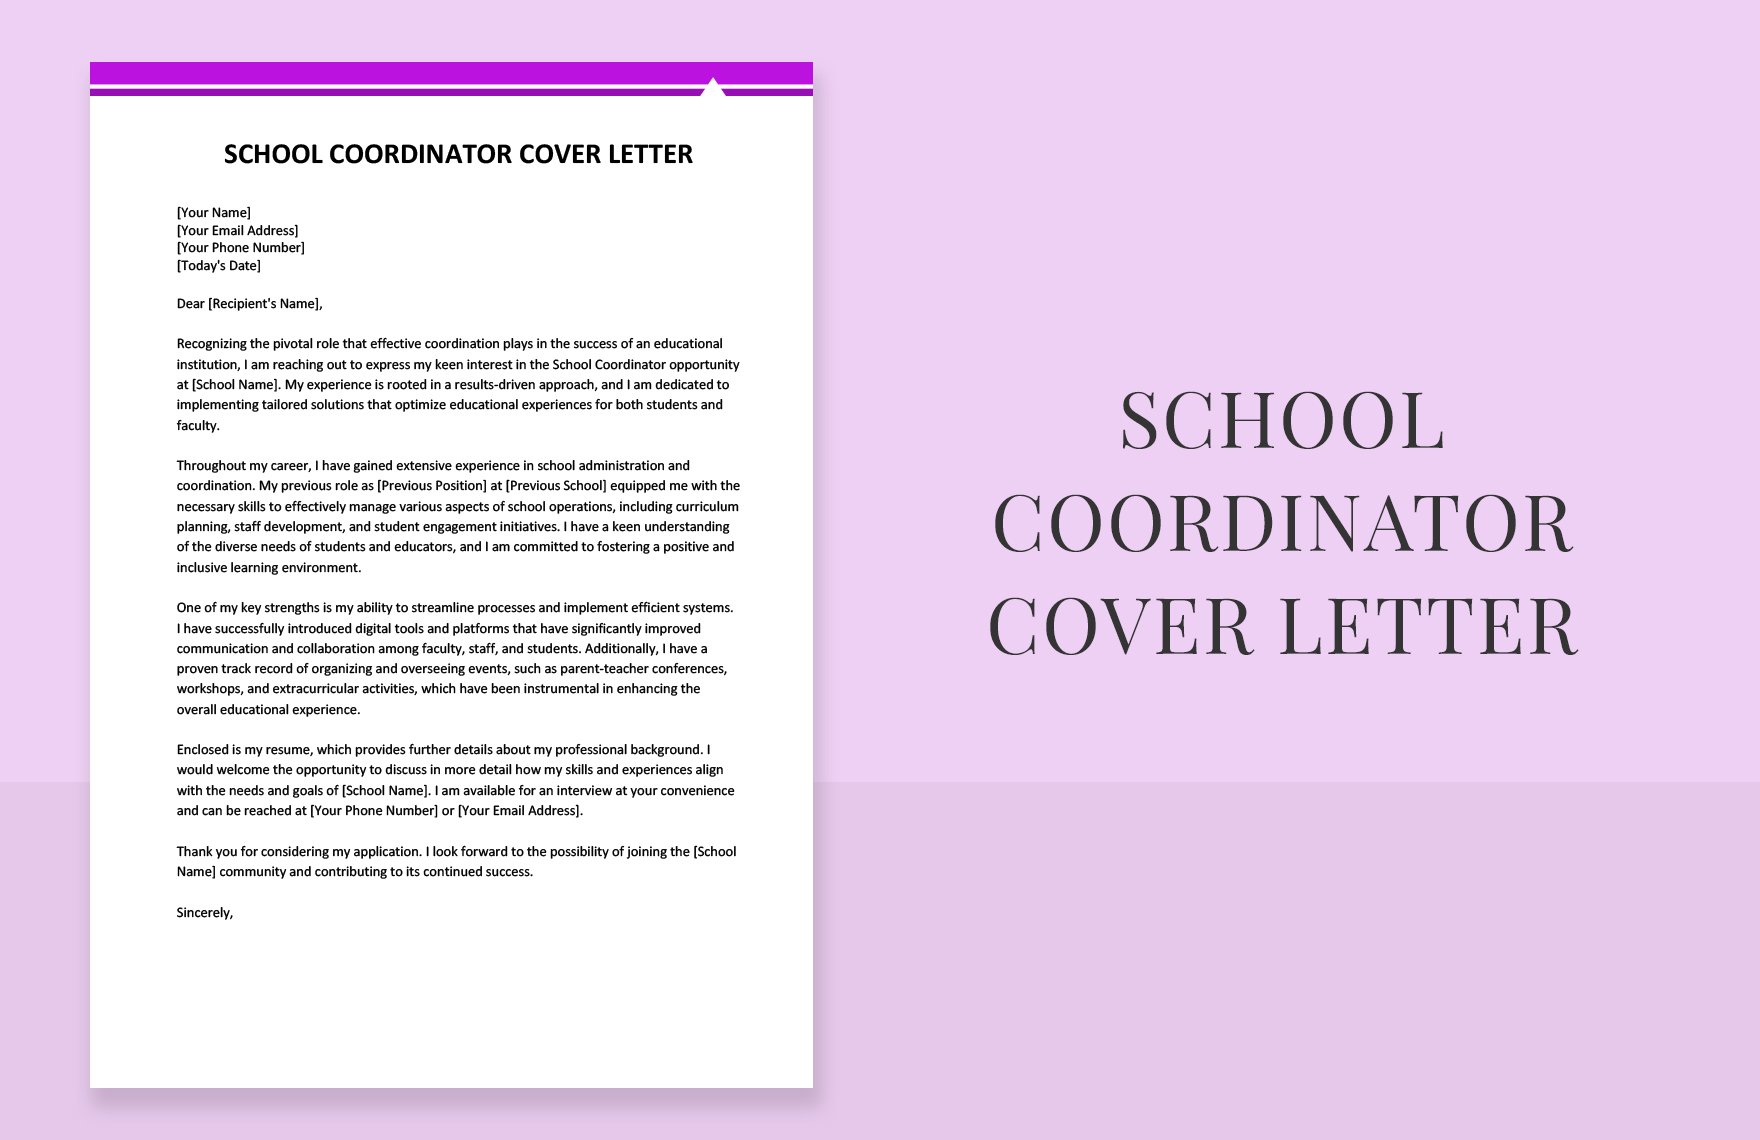 School Coordinator Cover Letter in Word, Google Docs